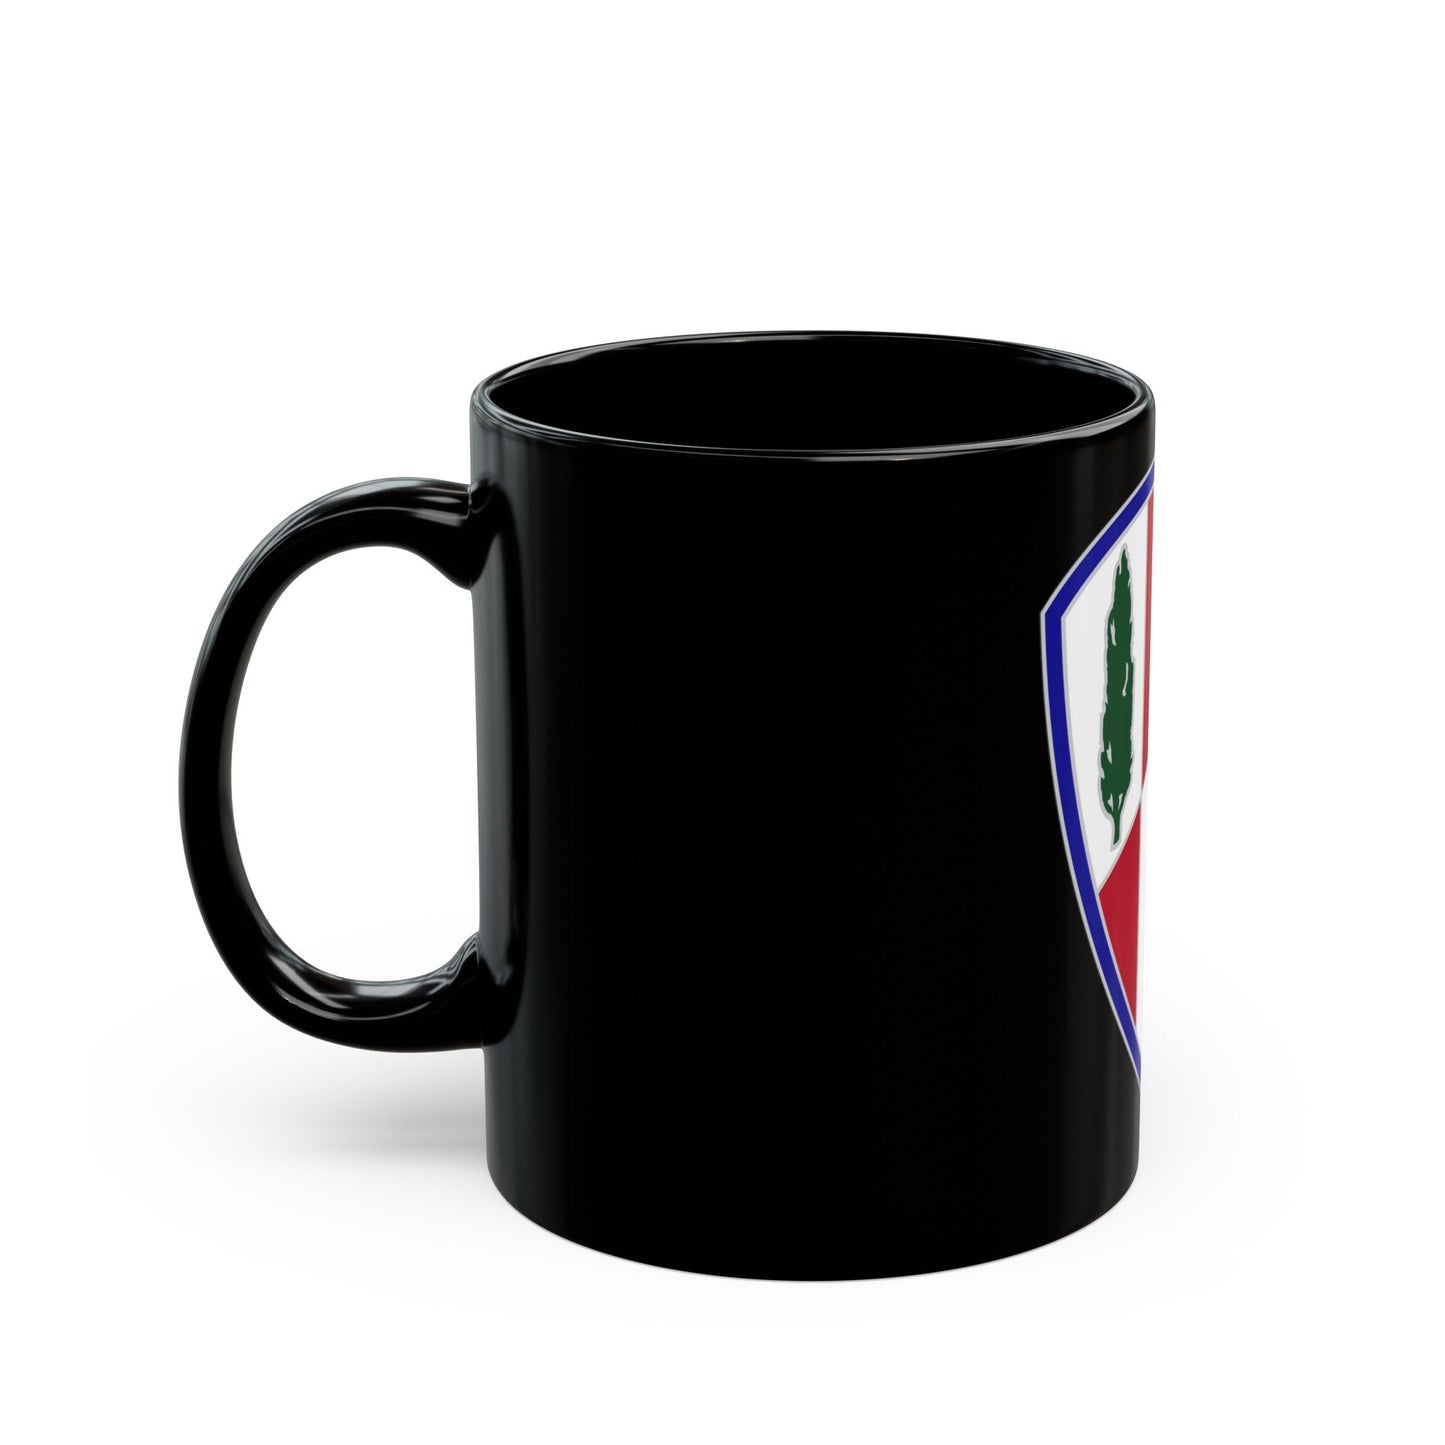 369 Sustainment Brigade (U.S. Army) Black Coffee Mug